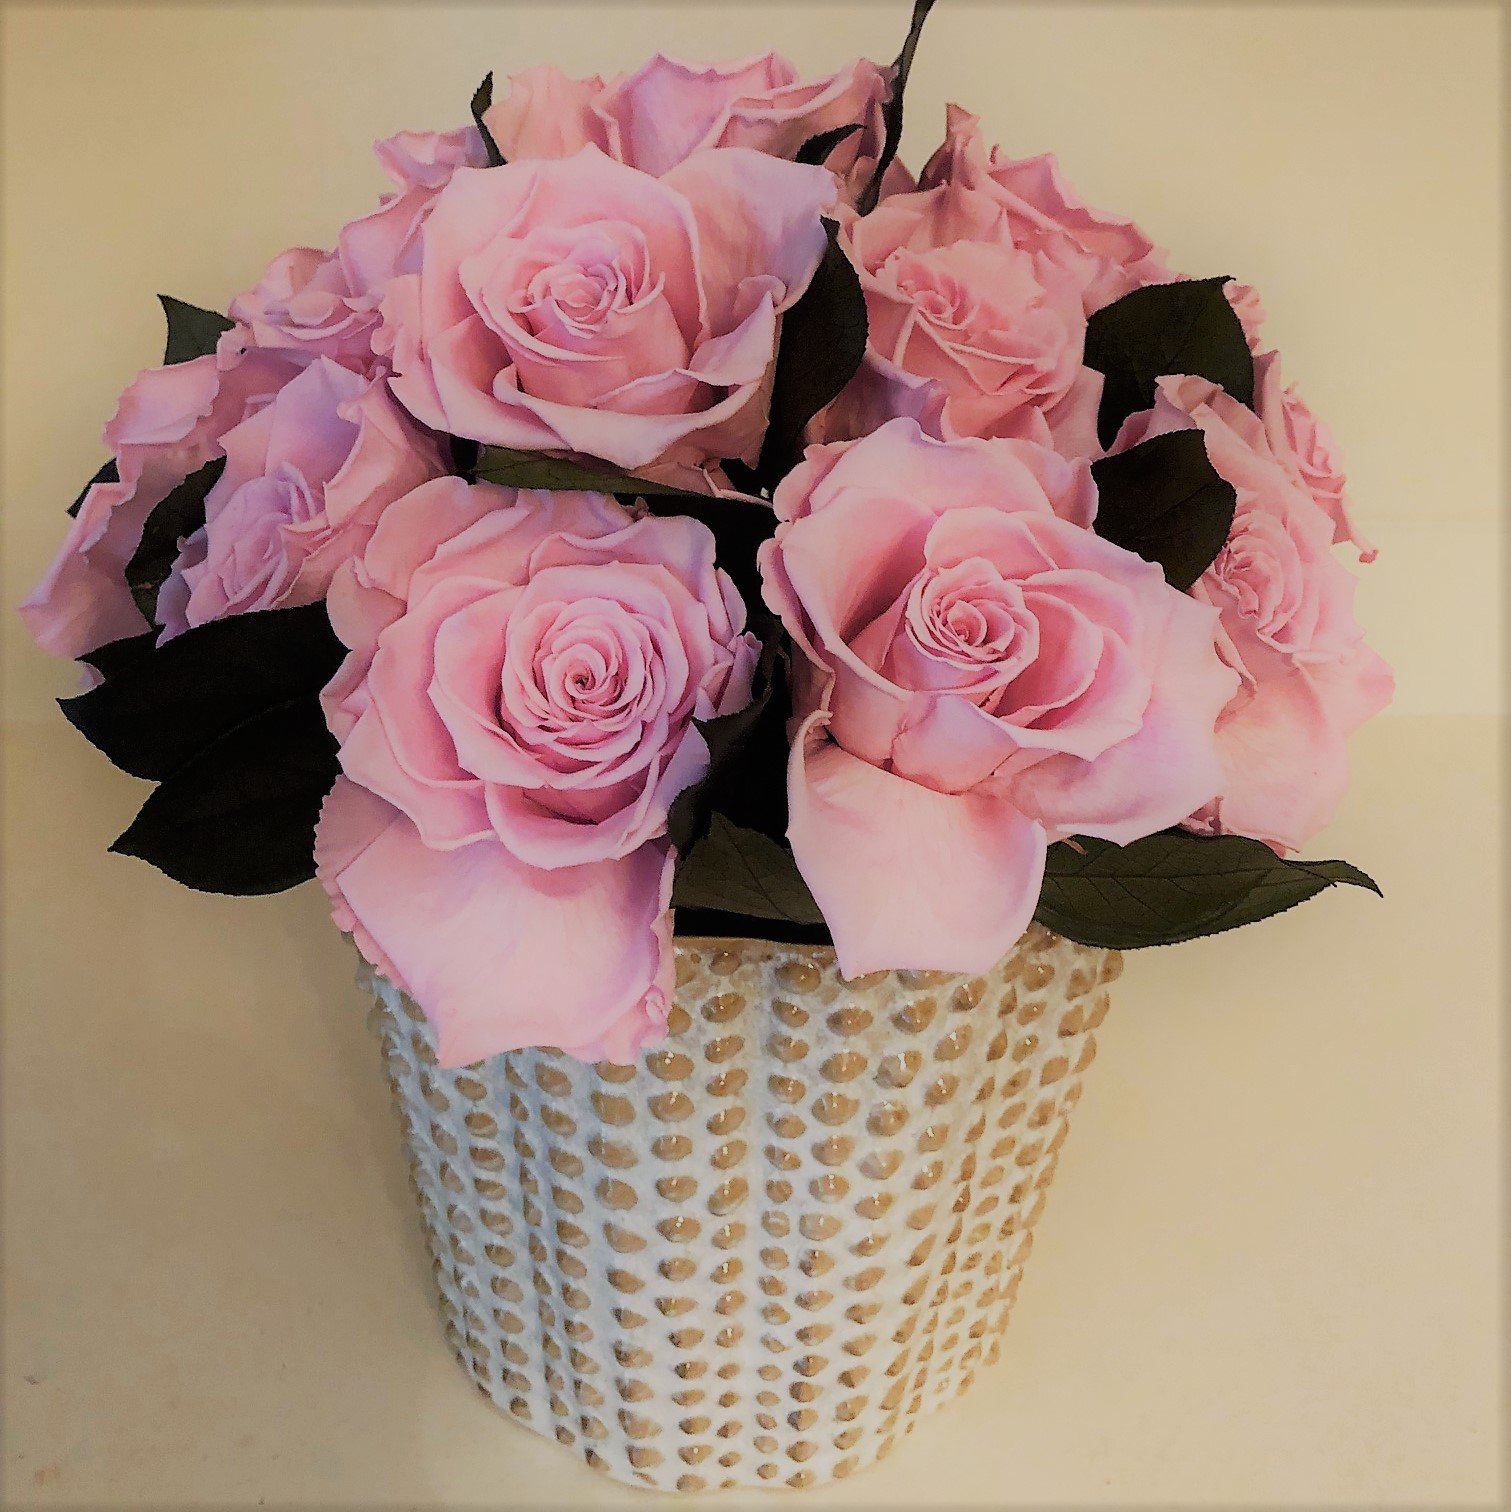 124 Pink roses in ceramic vase